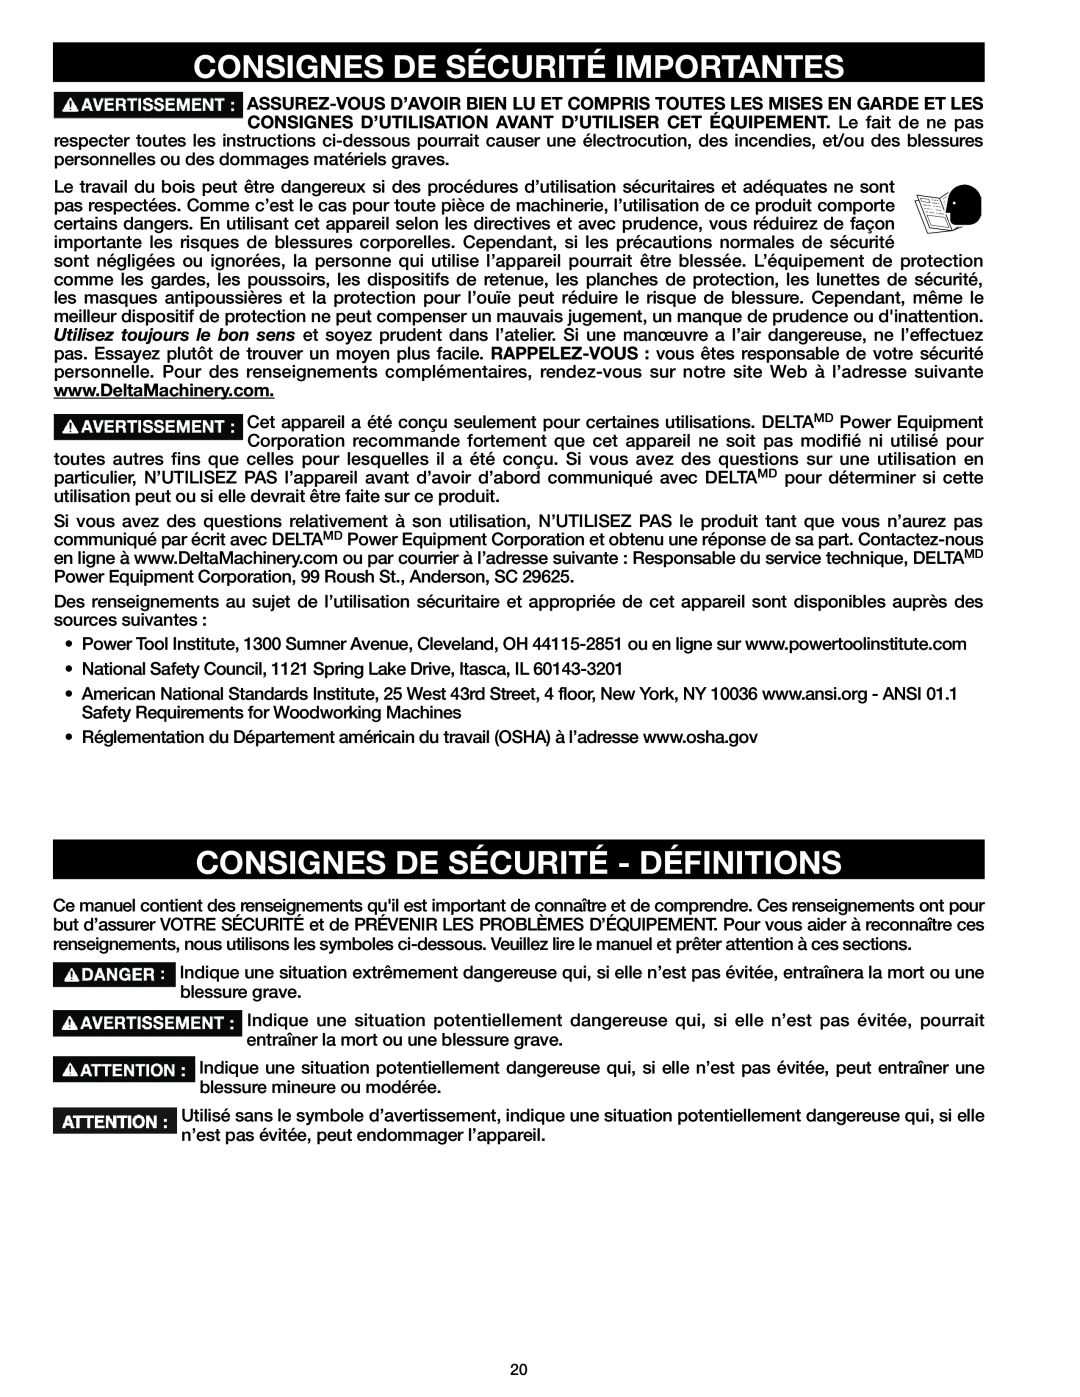 Delta 37-071 instruction manual Consignes De Sécurité Importantes, Consignes De Sécurité - Définitions 